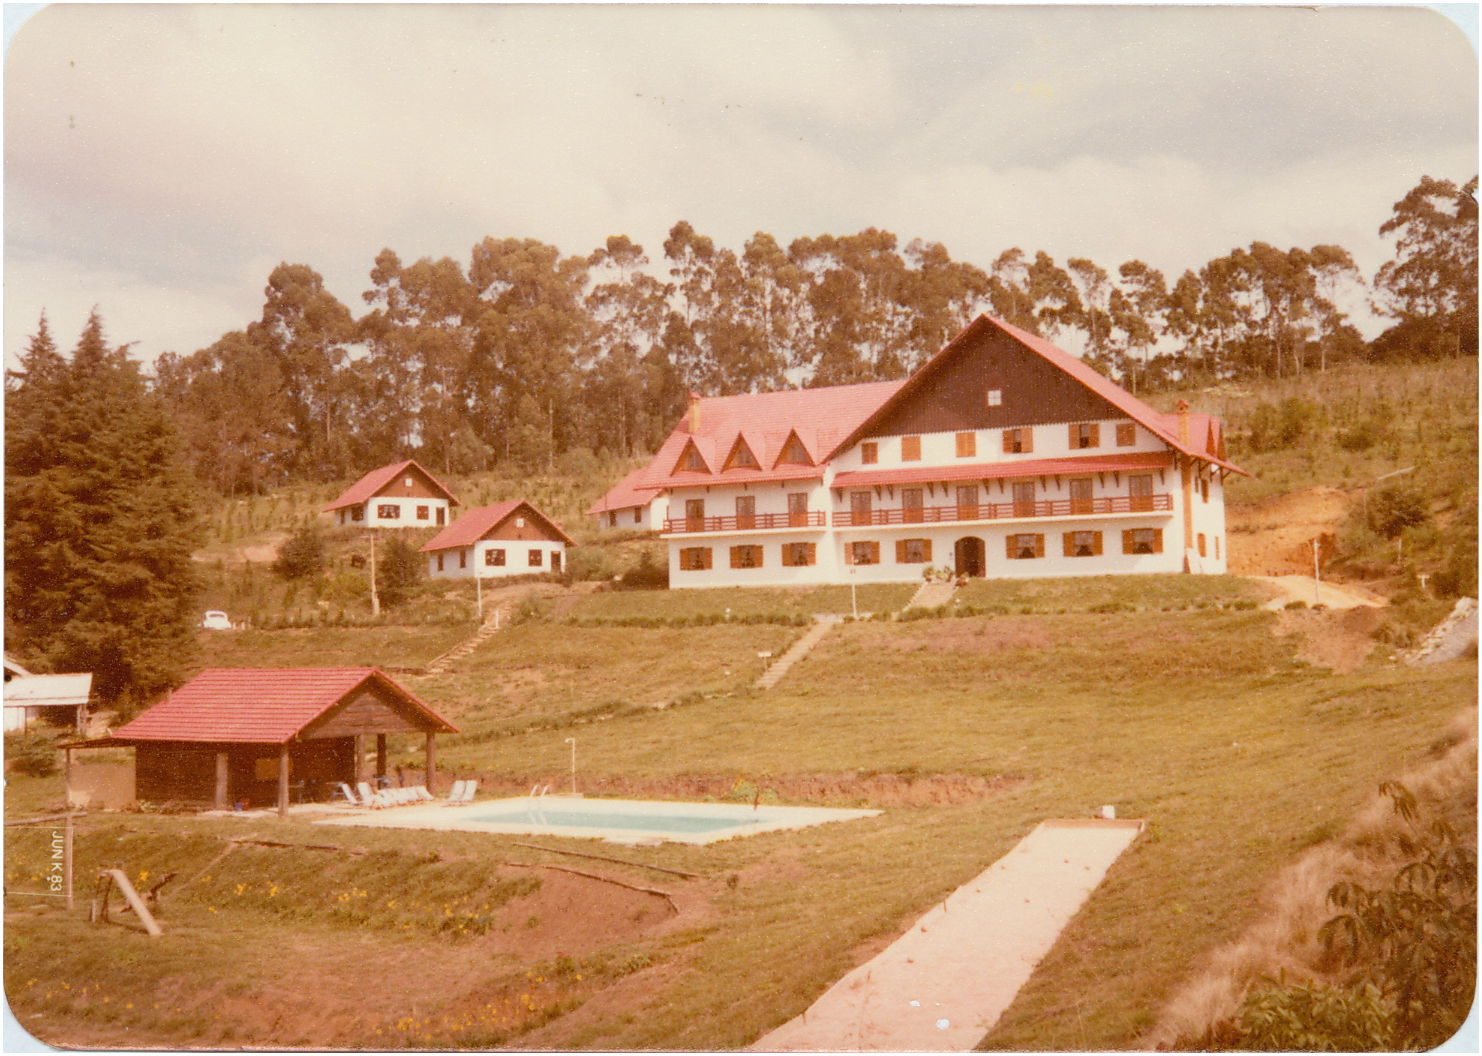 Hotel Pousada dos Pinhos - 1983